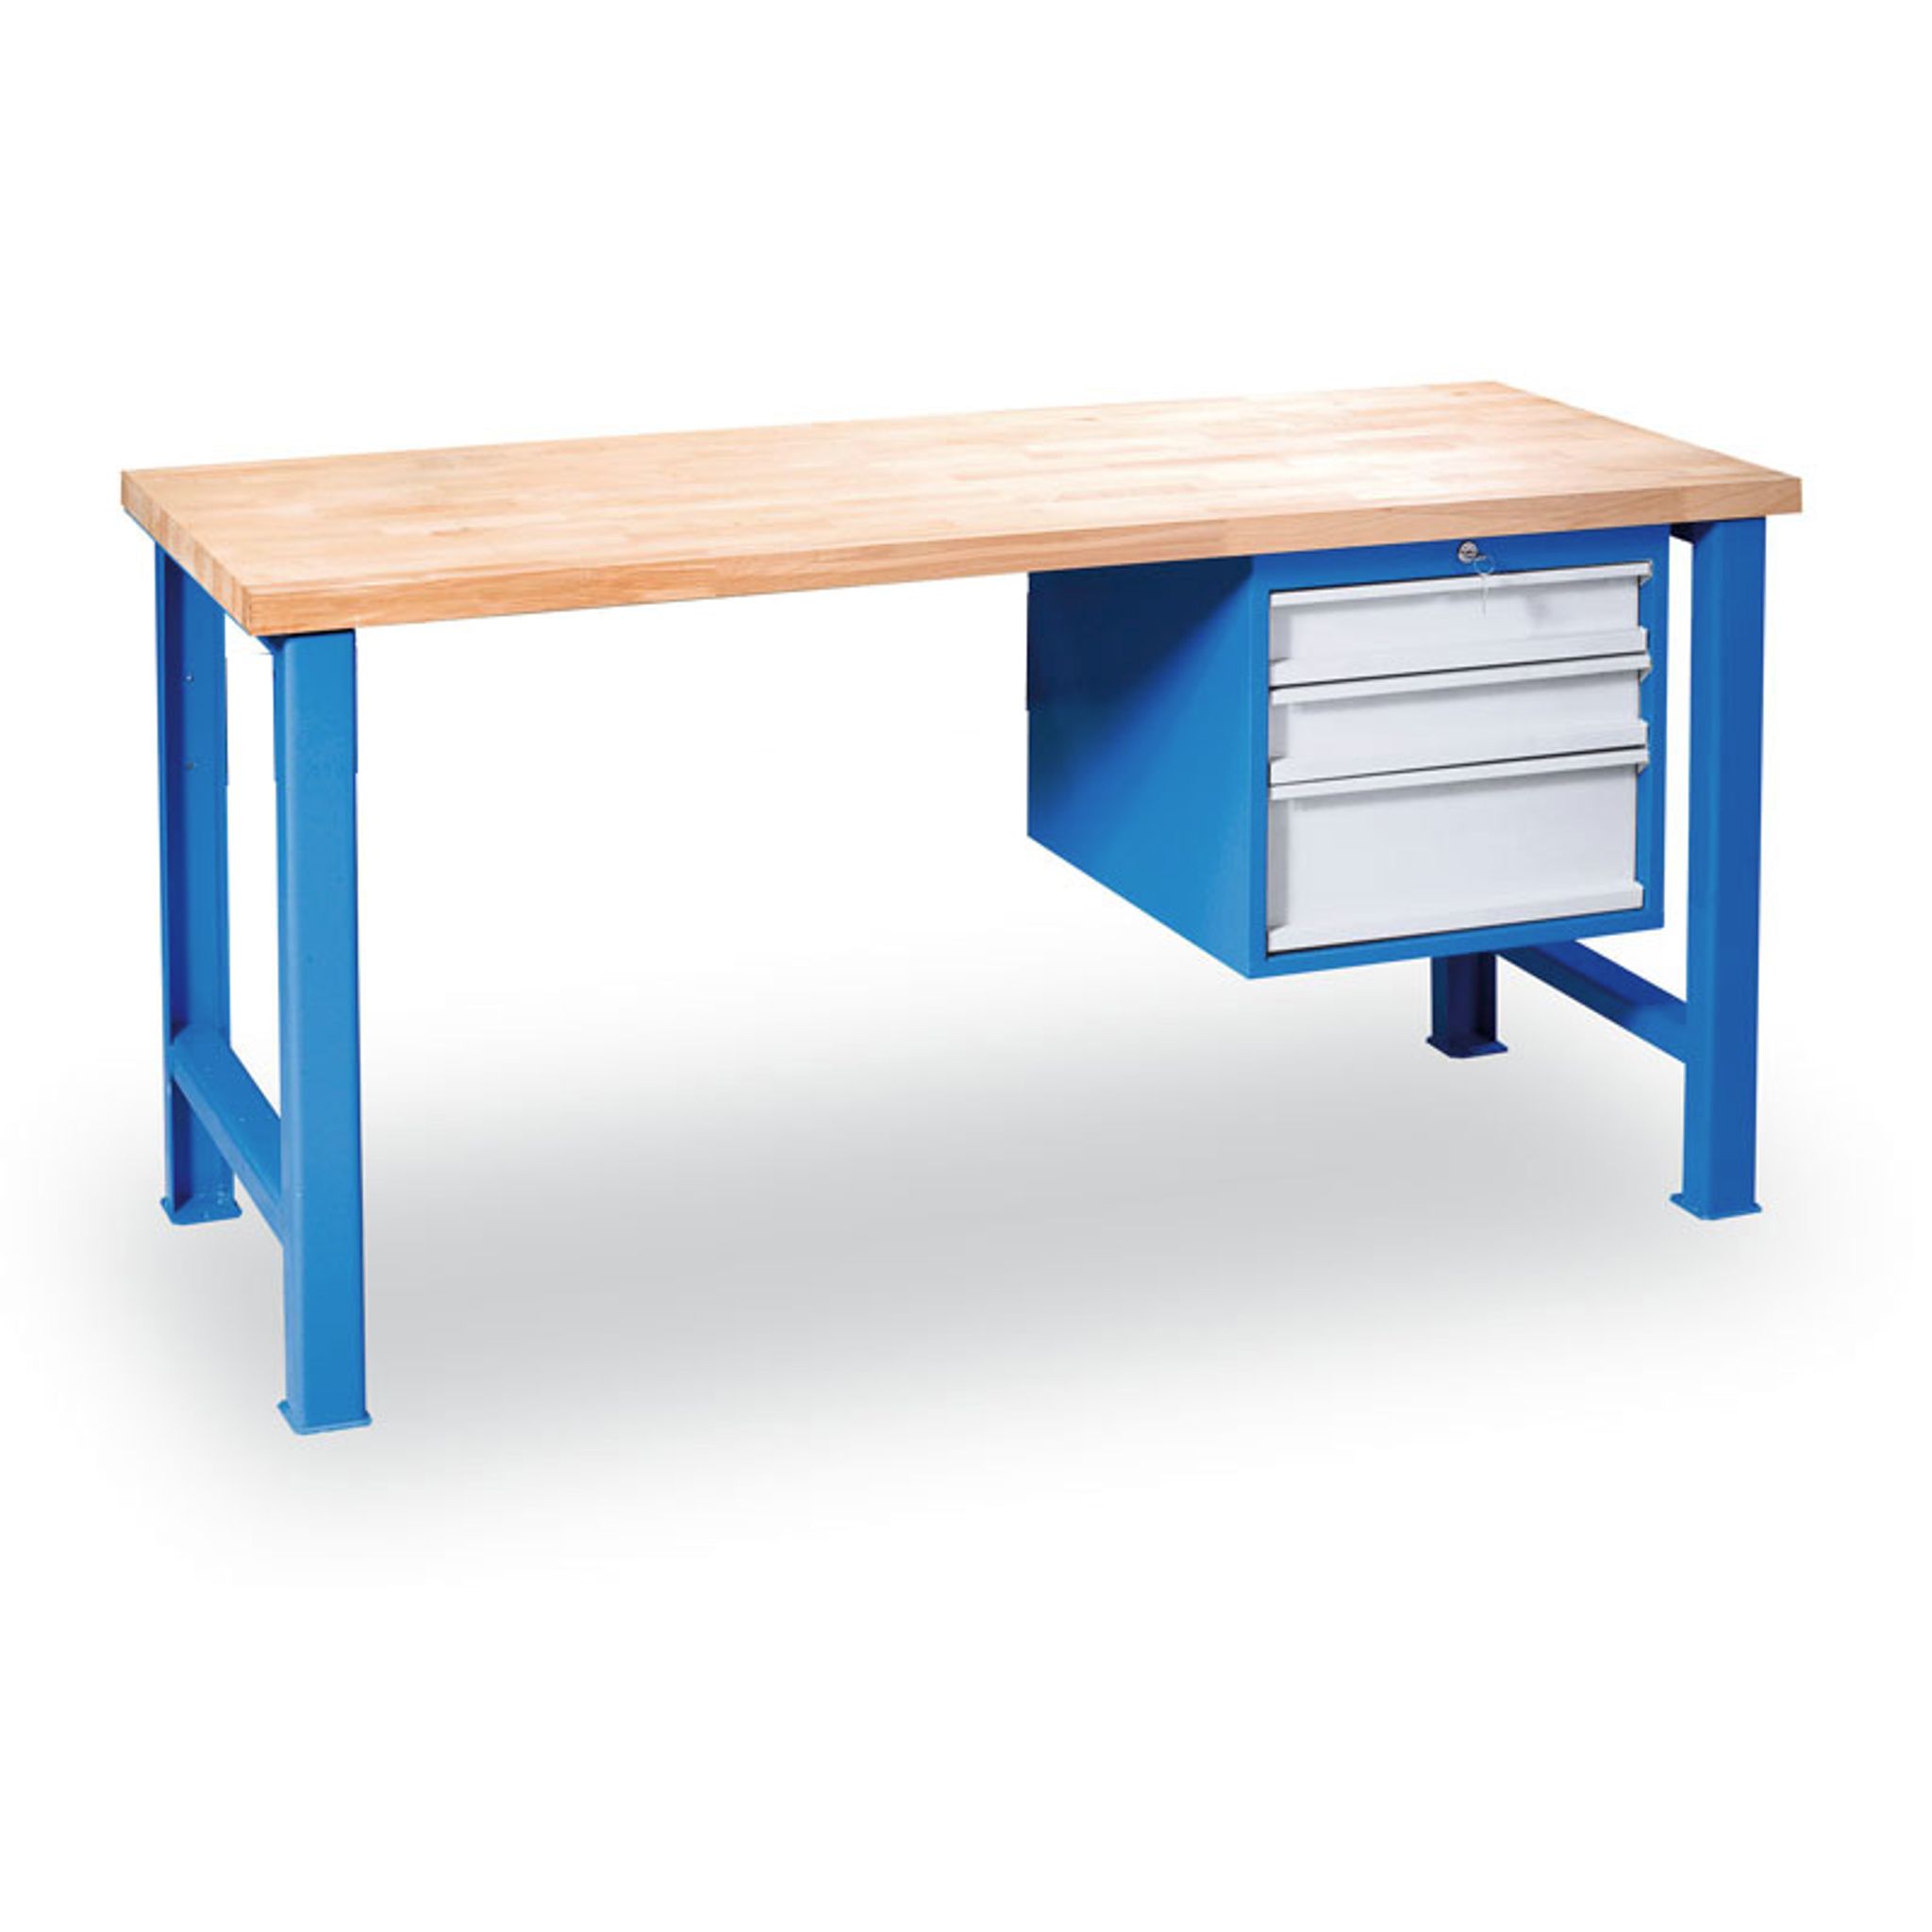 Stół warsztatowy z regulacją wysokości GÜDE Variant z szafką na narzędzia, 3 szuflady, 1200 x 685 x 850 - 1050 mm, niebieski